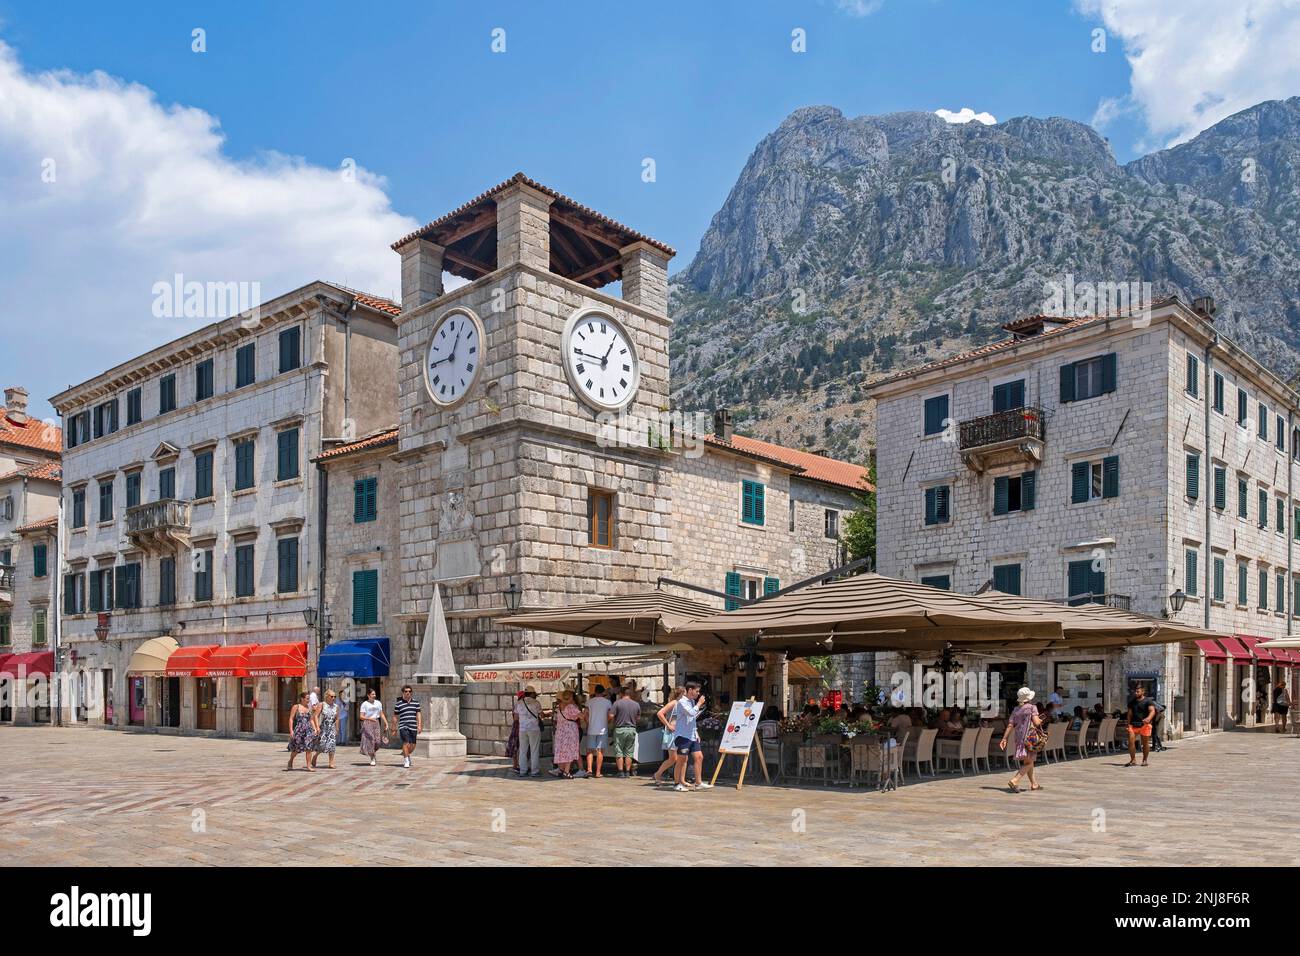 Torre dell'orologio della città del 17th ° secolo sulla Piazza delle armi, piazza principale nel centro storico veneziano di Cattaro, sud-ovest del Montenegro Foto Stock